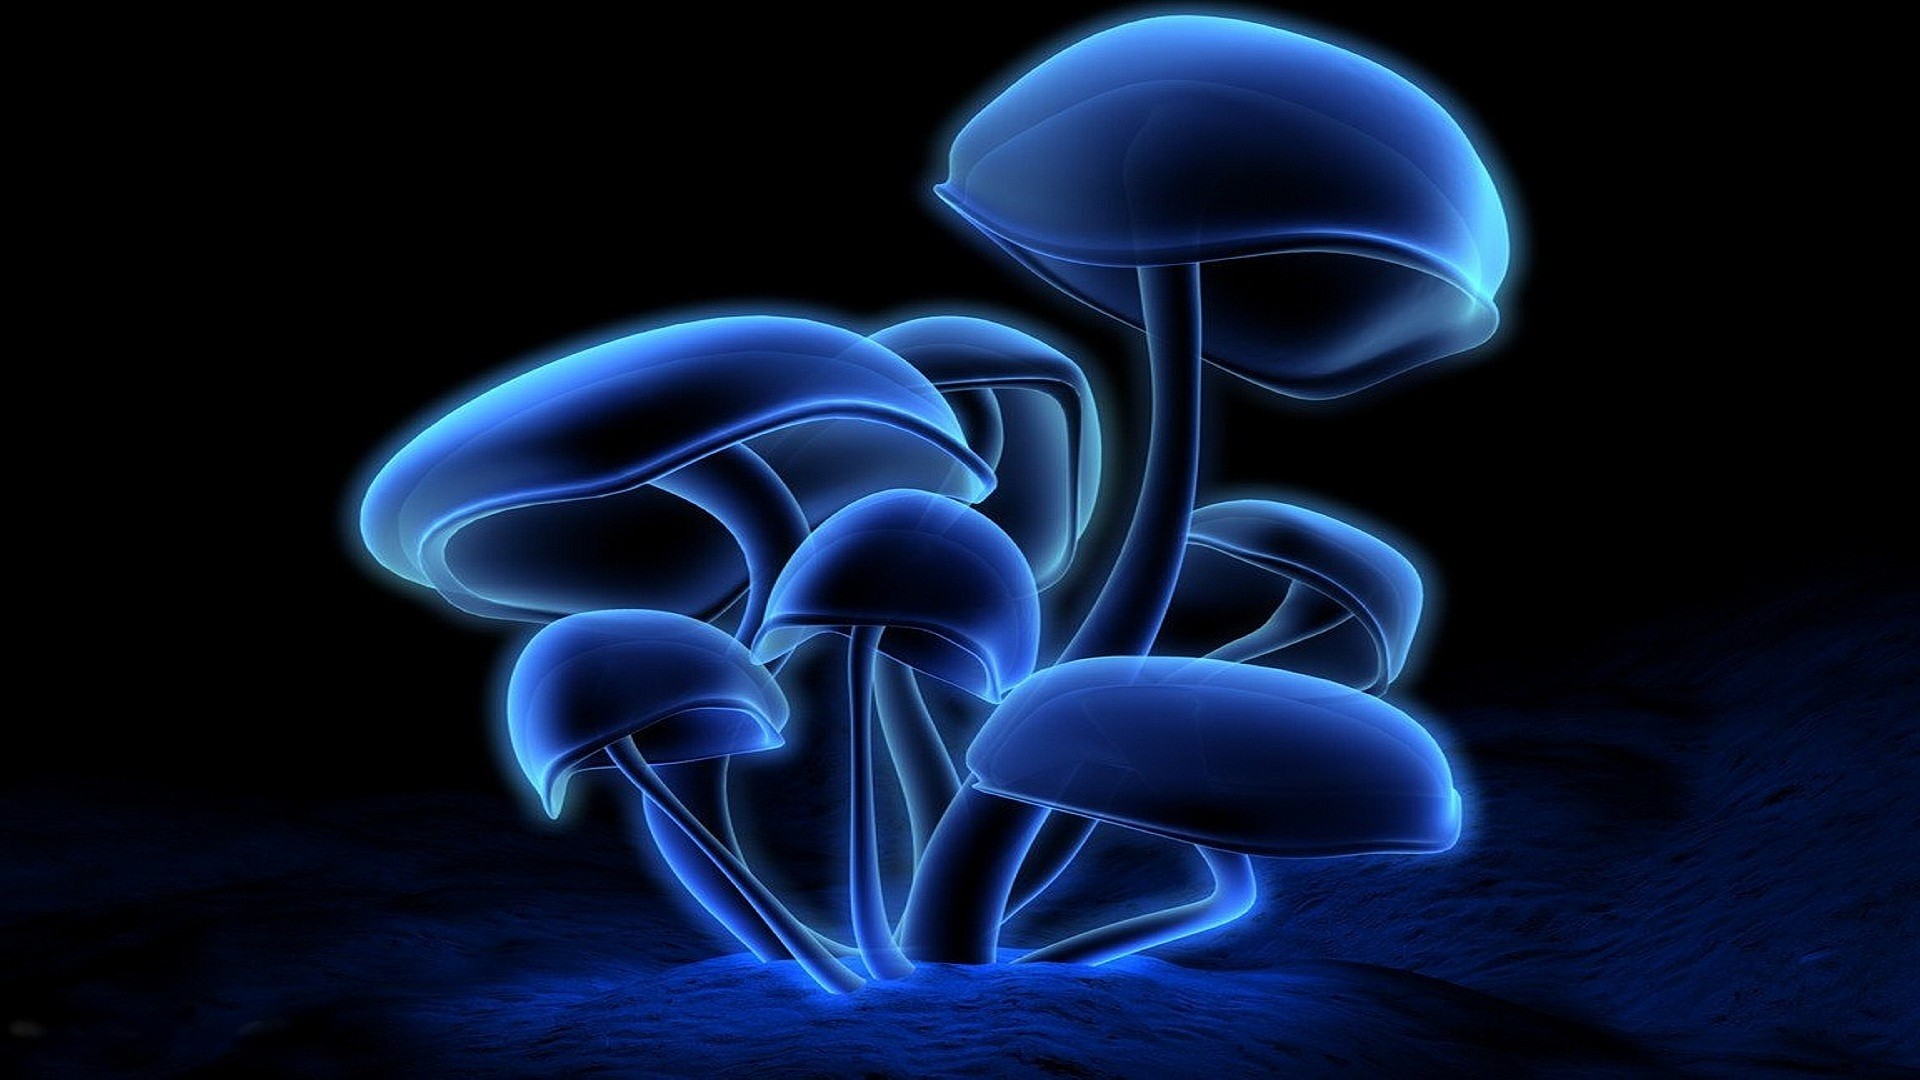 3172 Neon Mushroom Images Stock Photos  Vectors  Shutterstock